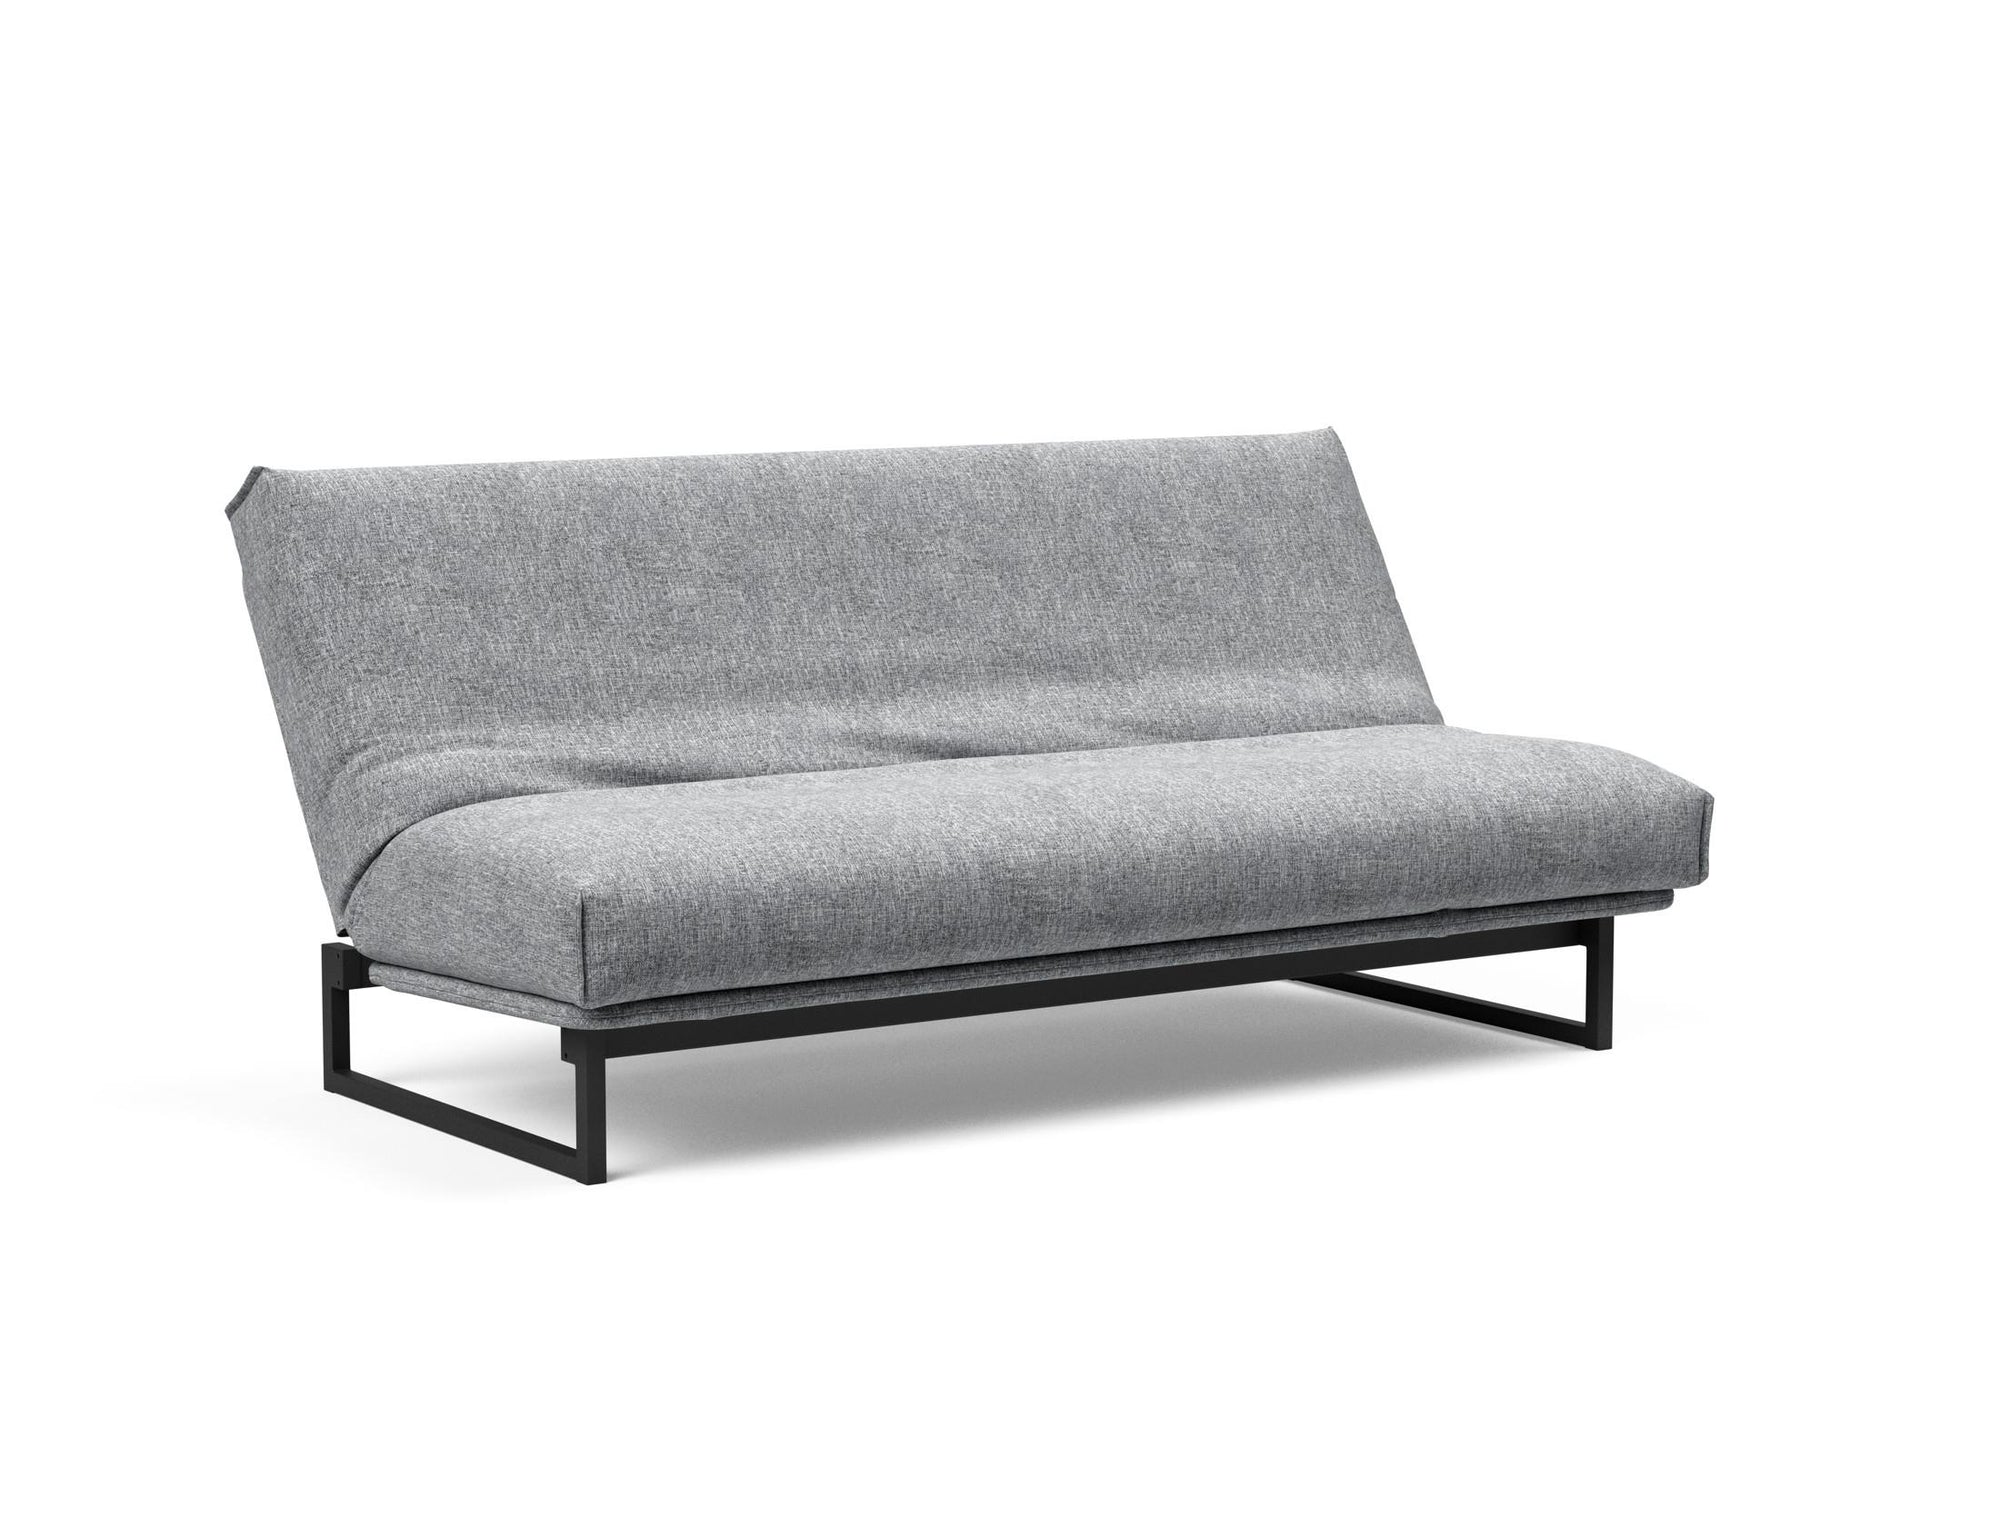 FRACTION Super Soft Sofa Bed 140CM